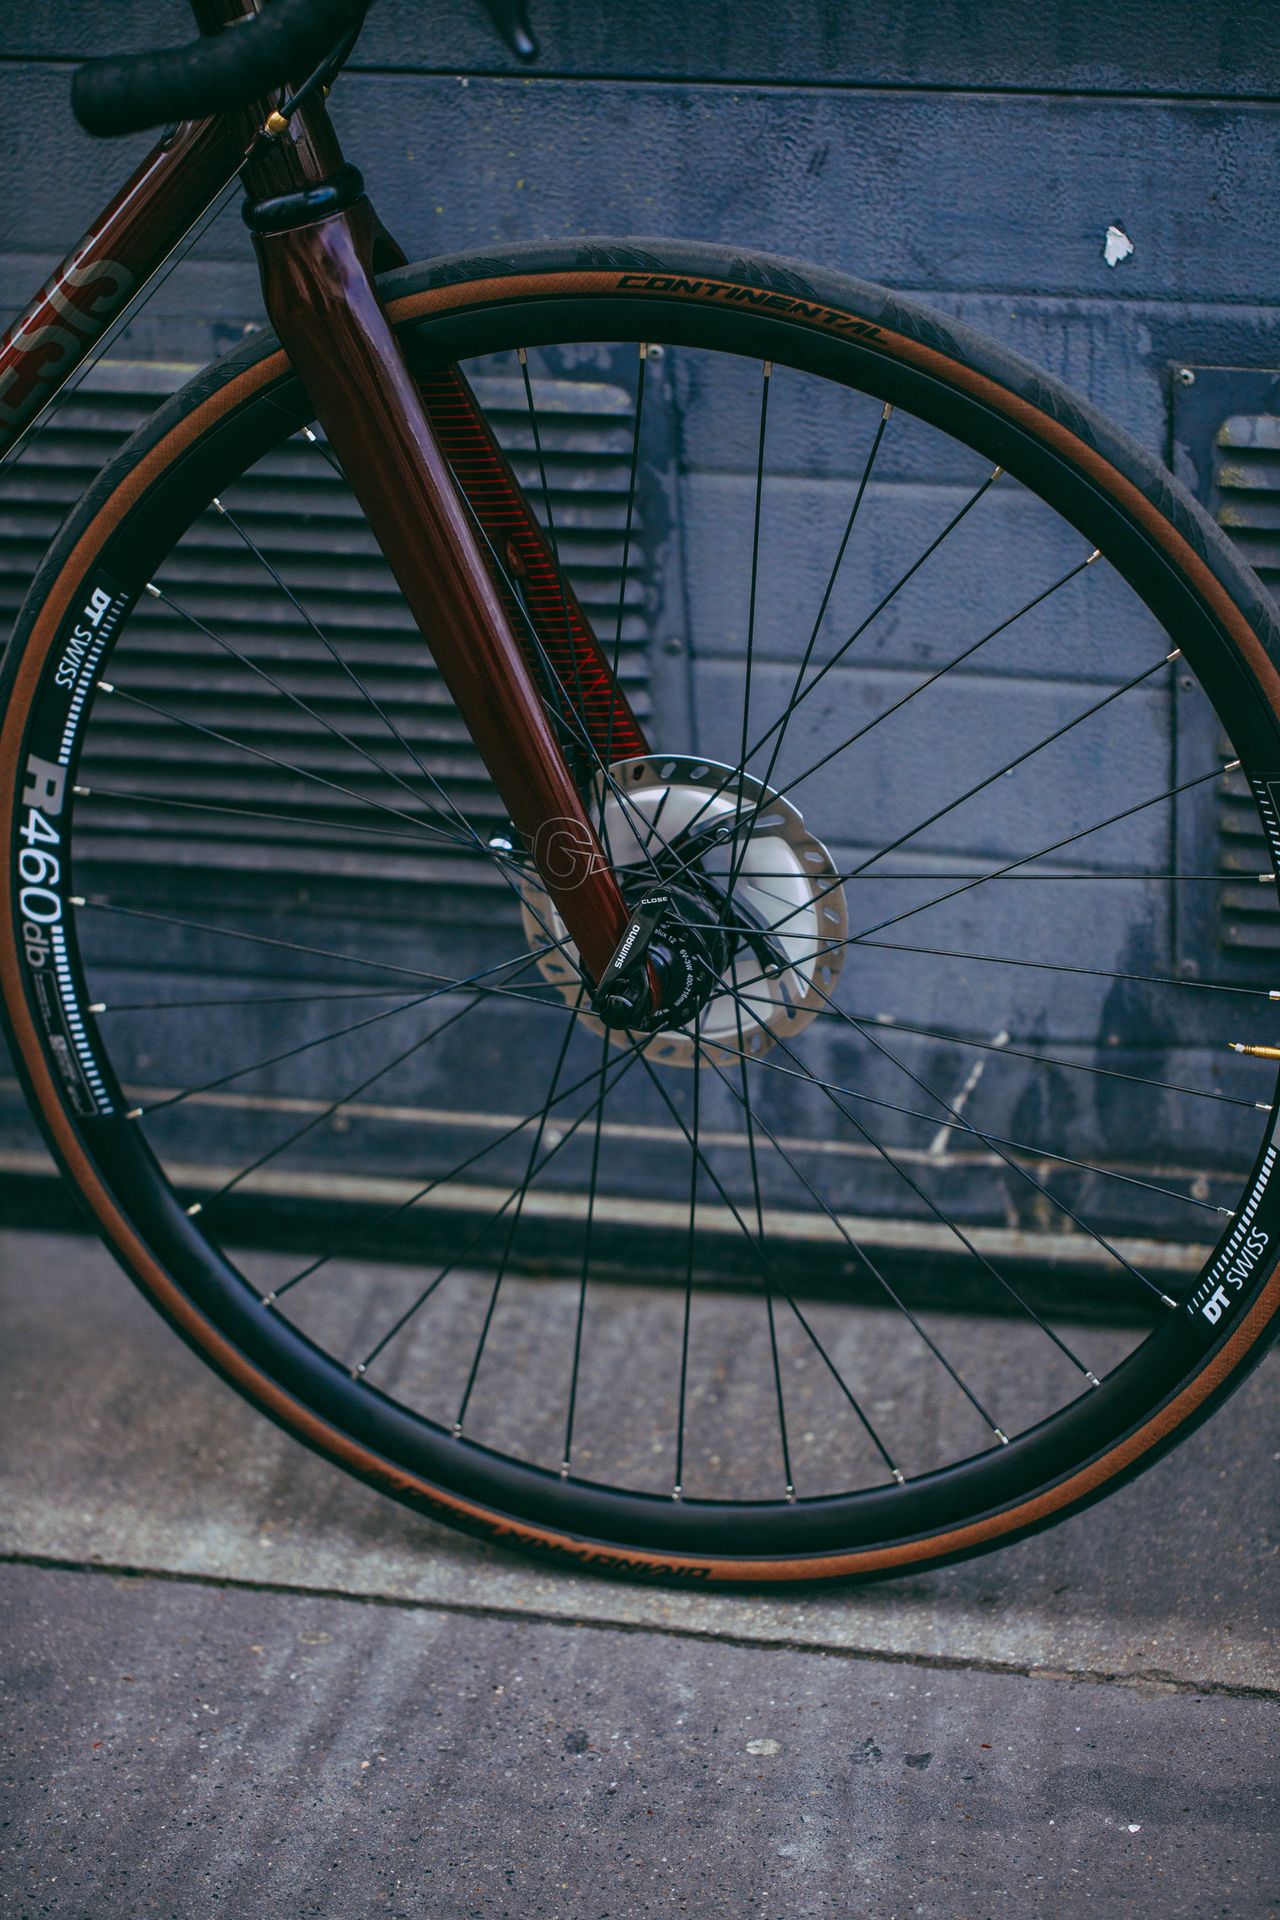 Magasin de cycles et atelier de réparation et montage vélo à la carte à Paris 13eme spécialisé dans le gravel et le voyage. Roue DT Swiss, fourche carbone